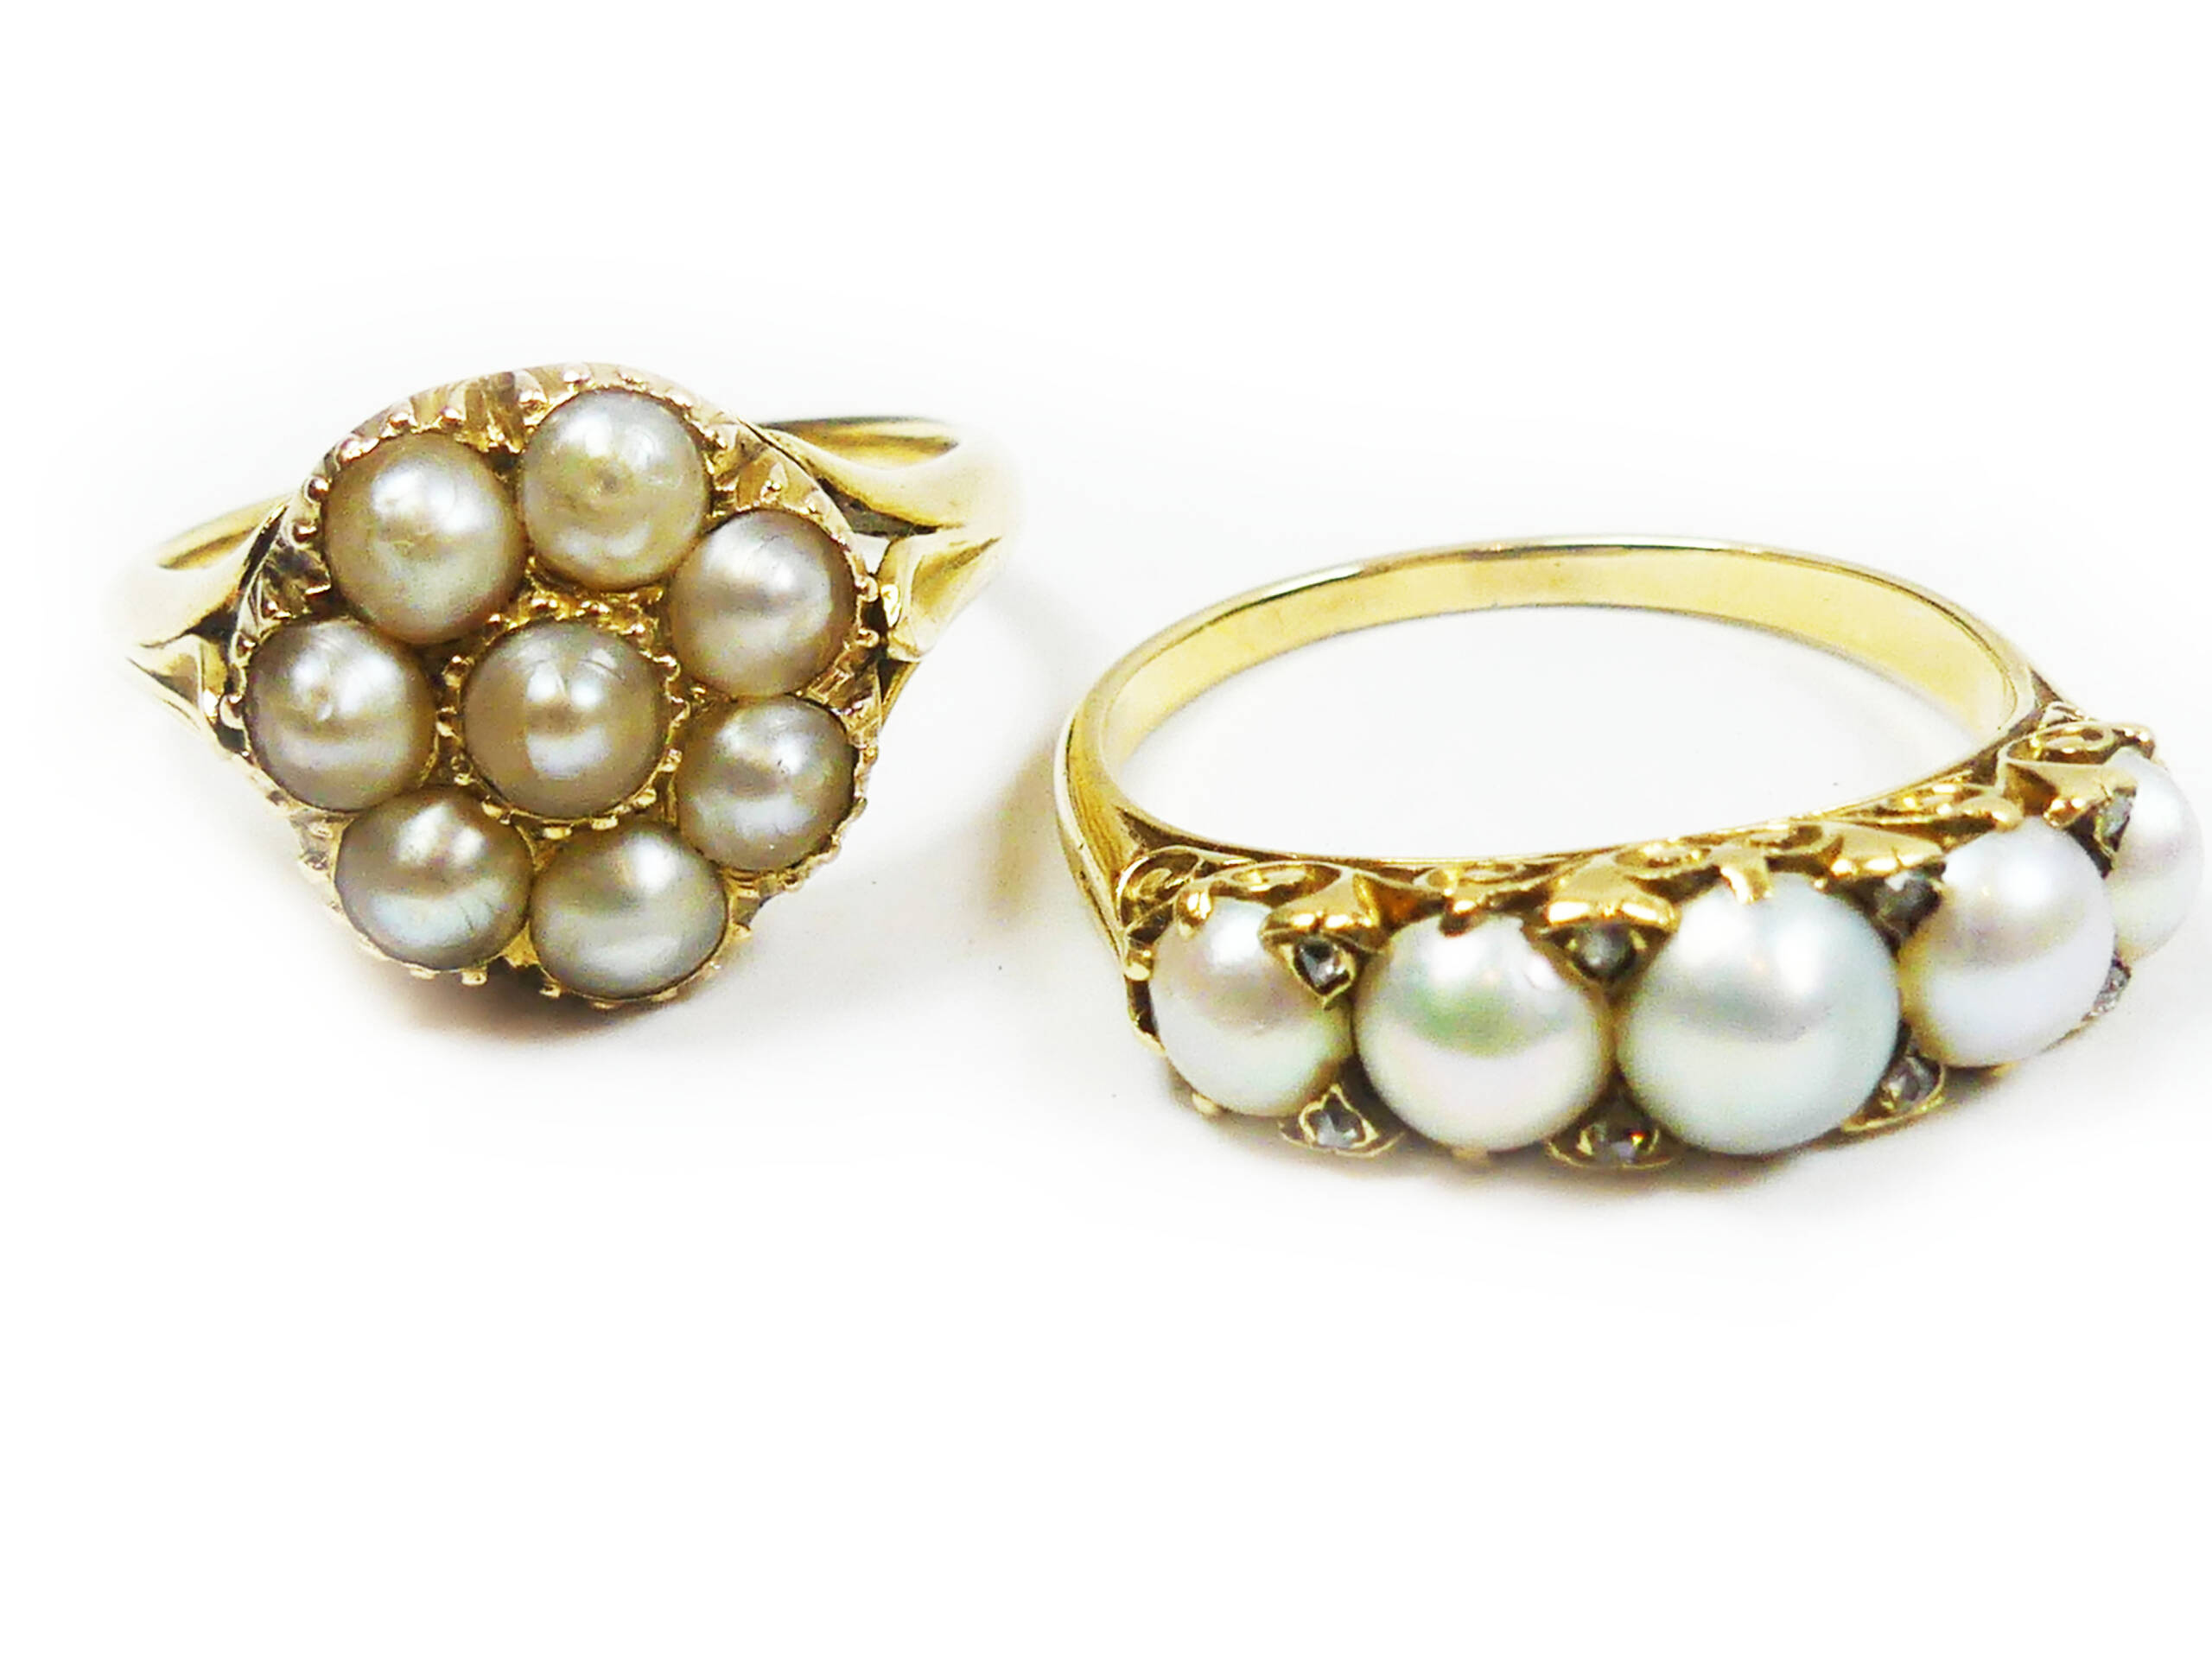 A Pair of Pearl Rings